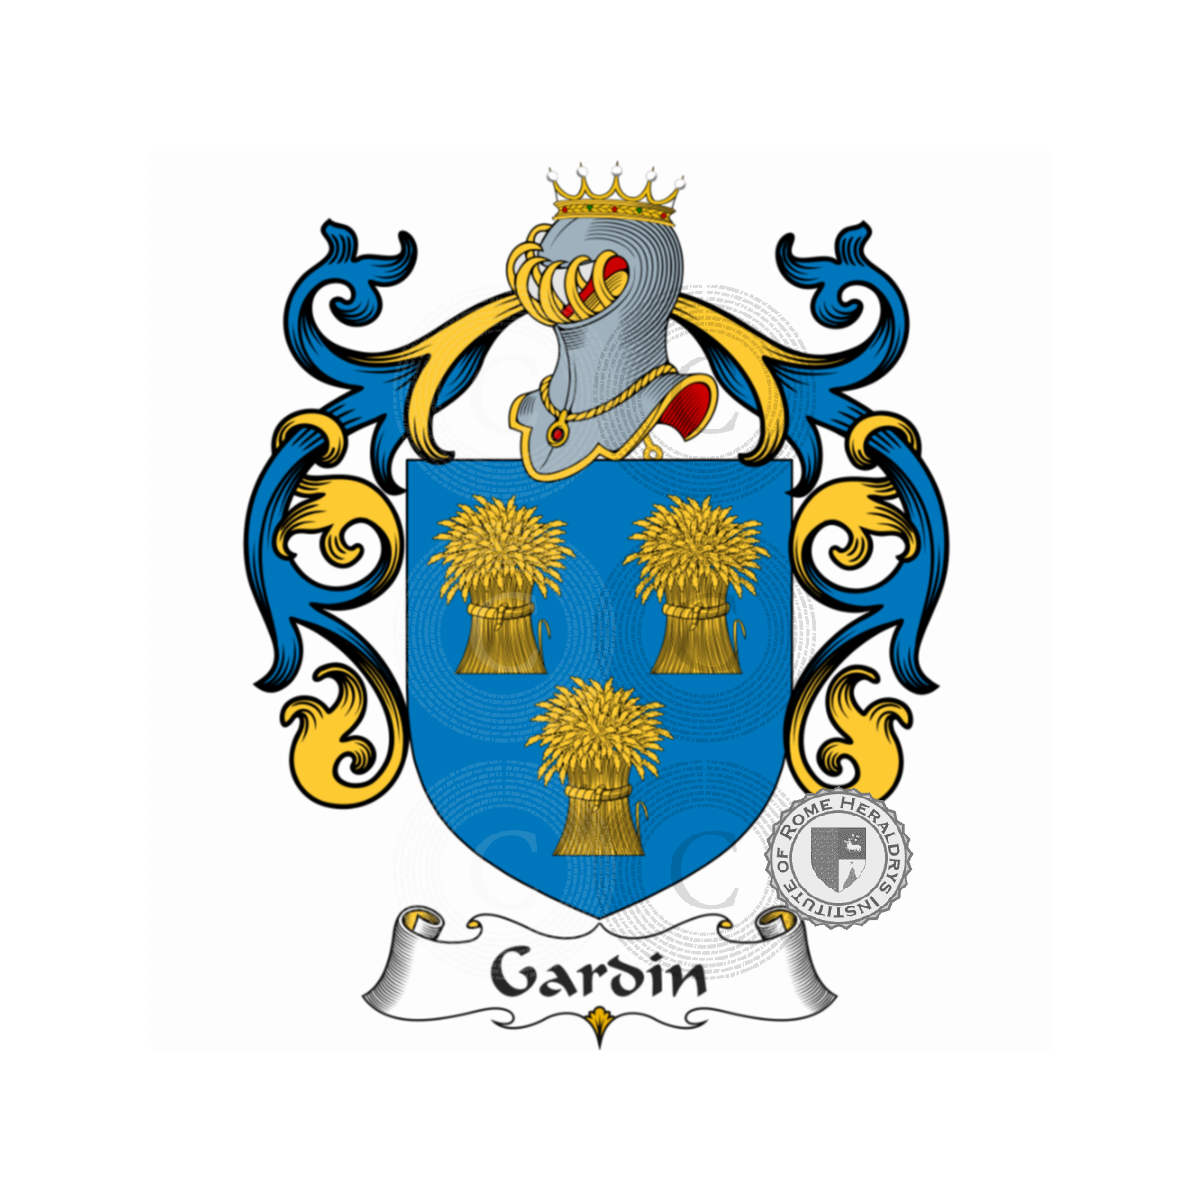 Brasão da famíliaGardin de Boishamon, du Gardin,Gardi,Gardin de Boishamon,Gardin de Lapillardière